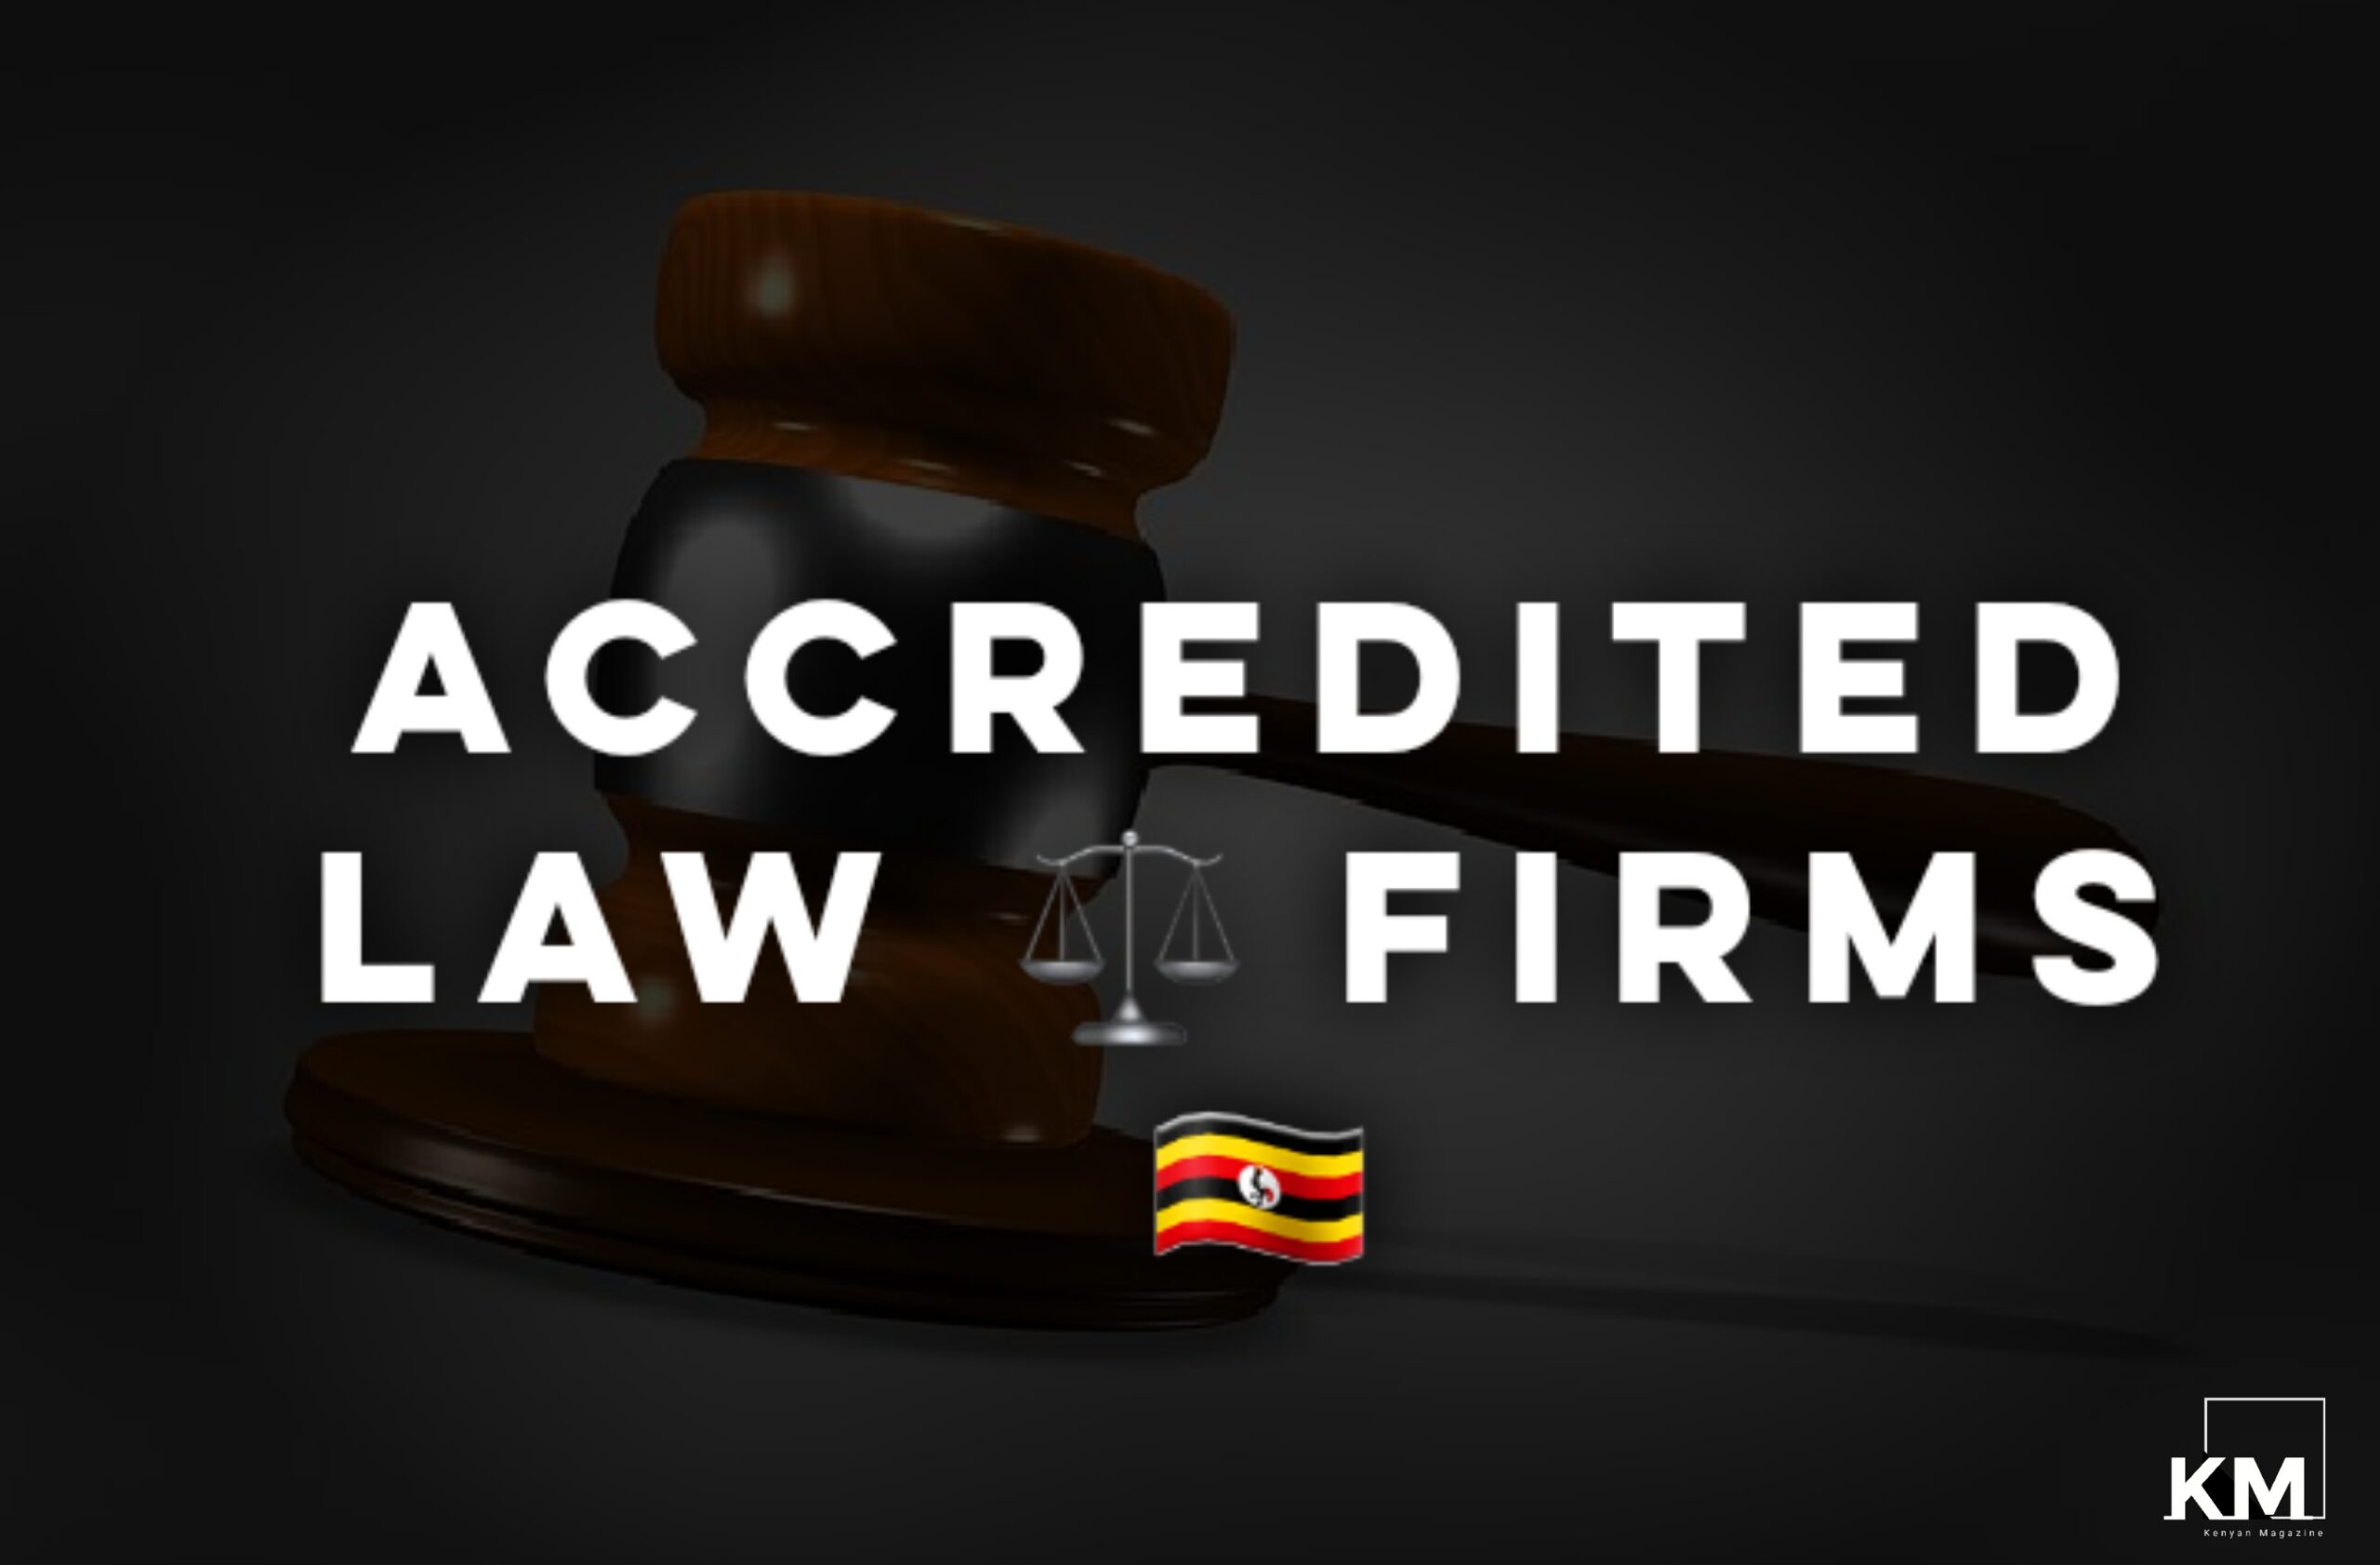 Law firms in Uganda